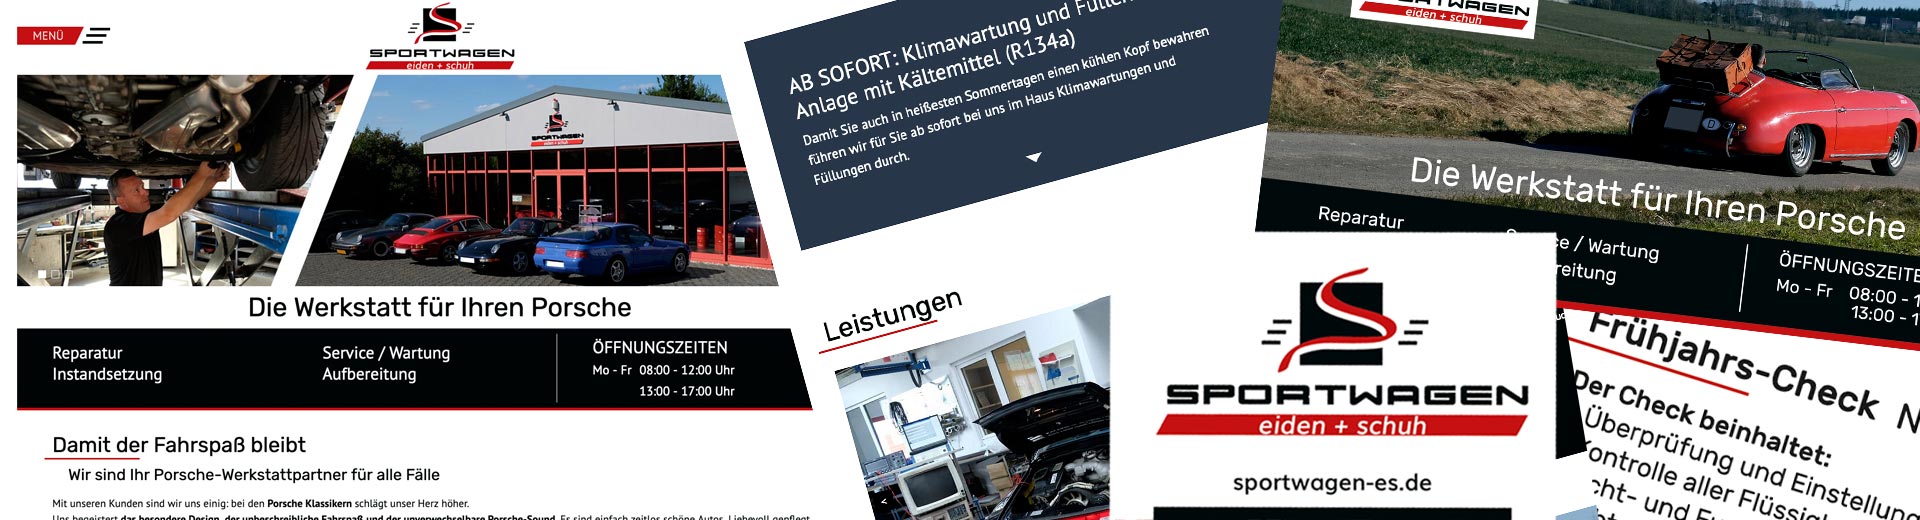 Ausschnitte aus Webseite, Visitenkarte, Flyer Sportwagen Eiden & Schuh